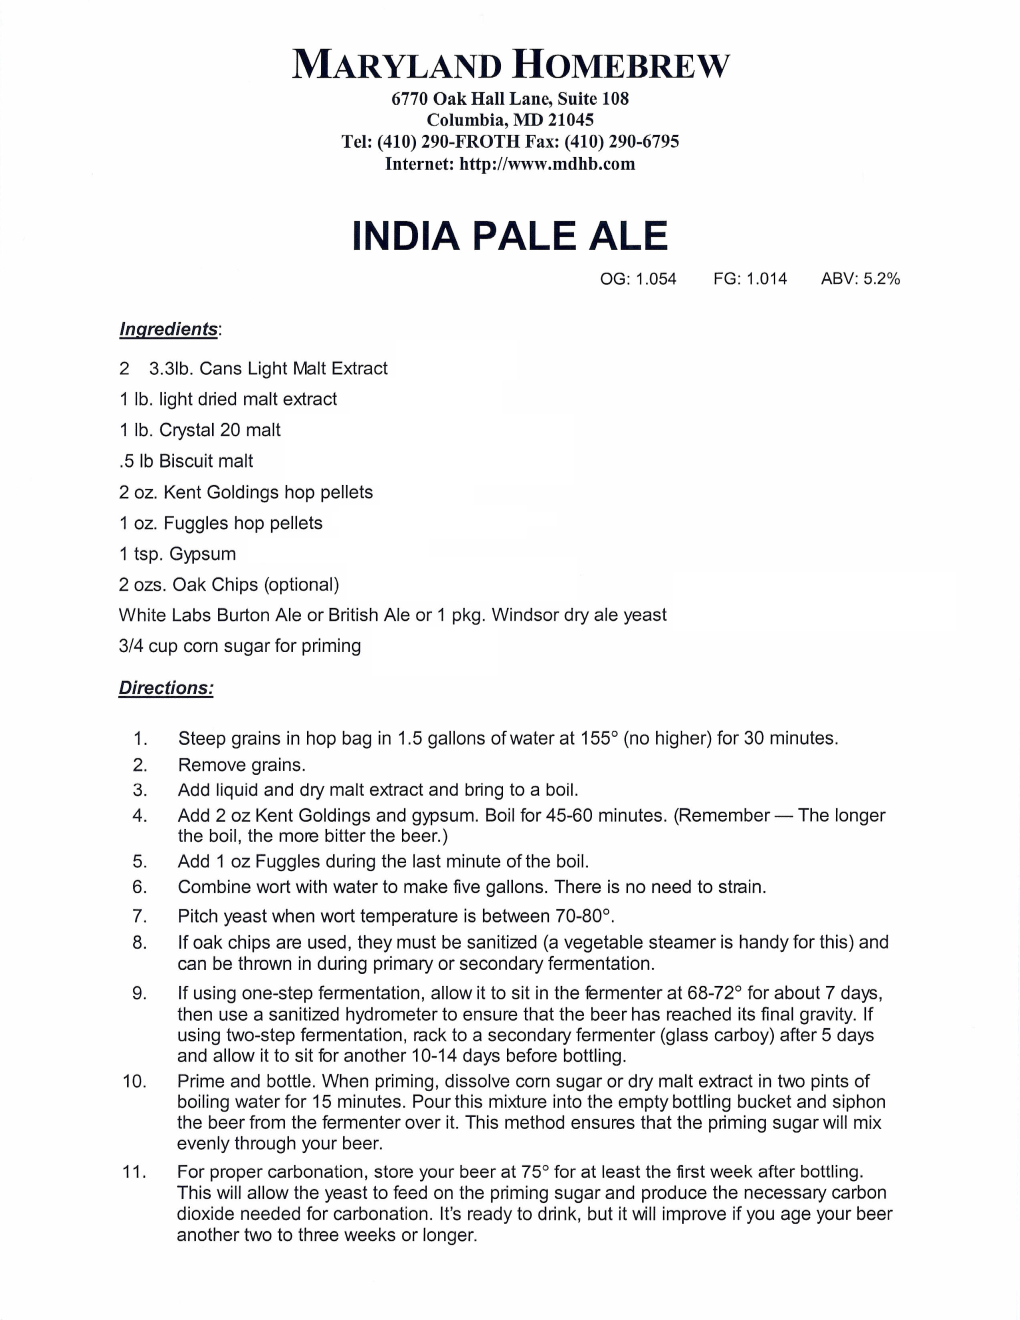 India Pale Ale Og: 1.054 Fg: 1.014 Abv: 5.2%